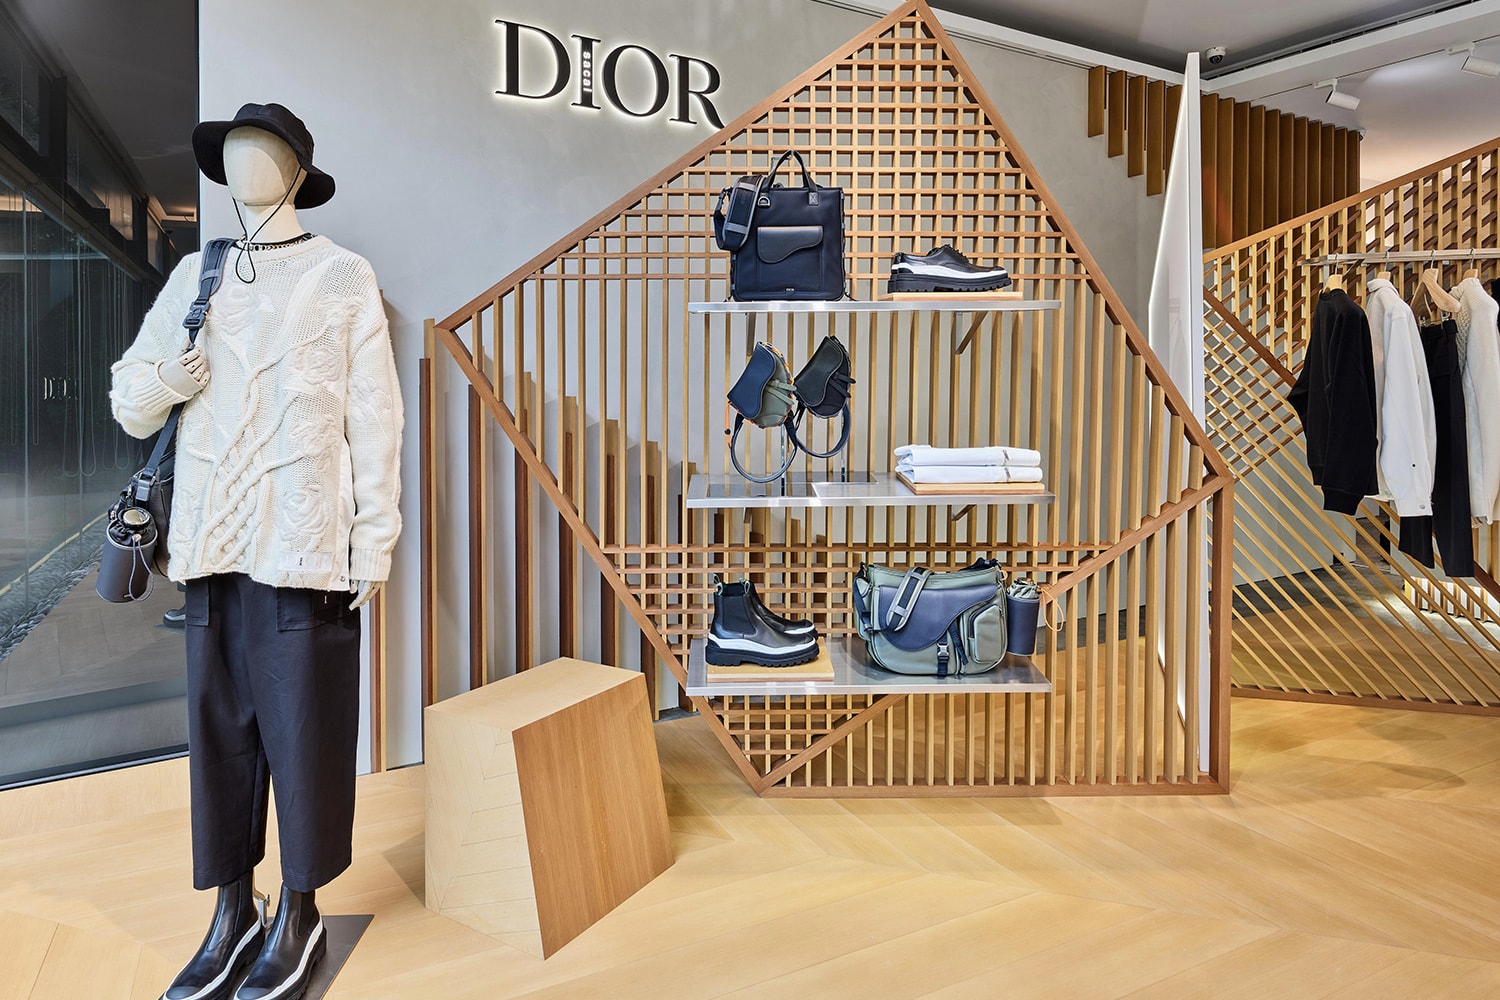 Dior and sacai 男裝期間限定店鋪正式登陸台中